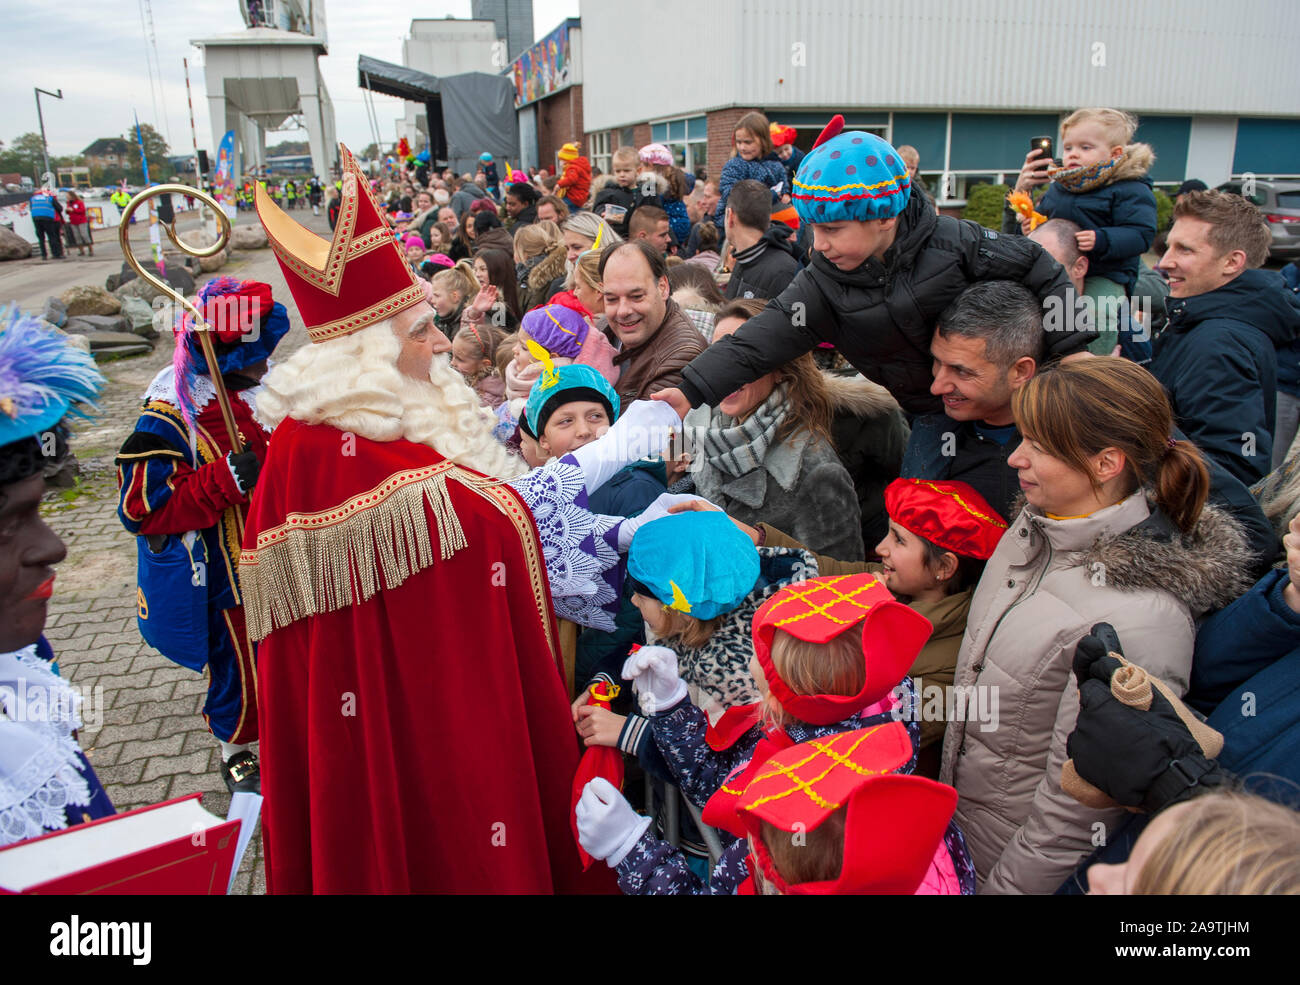 ENSCHEDE, Niederlande - 16.November 2019: Die niederländischen Santa Claus genannt interklaas' ist Begrüßung der Kinder, nachdem er auf einem Boot in einem dutc eingetroffen ist Stockfoto